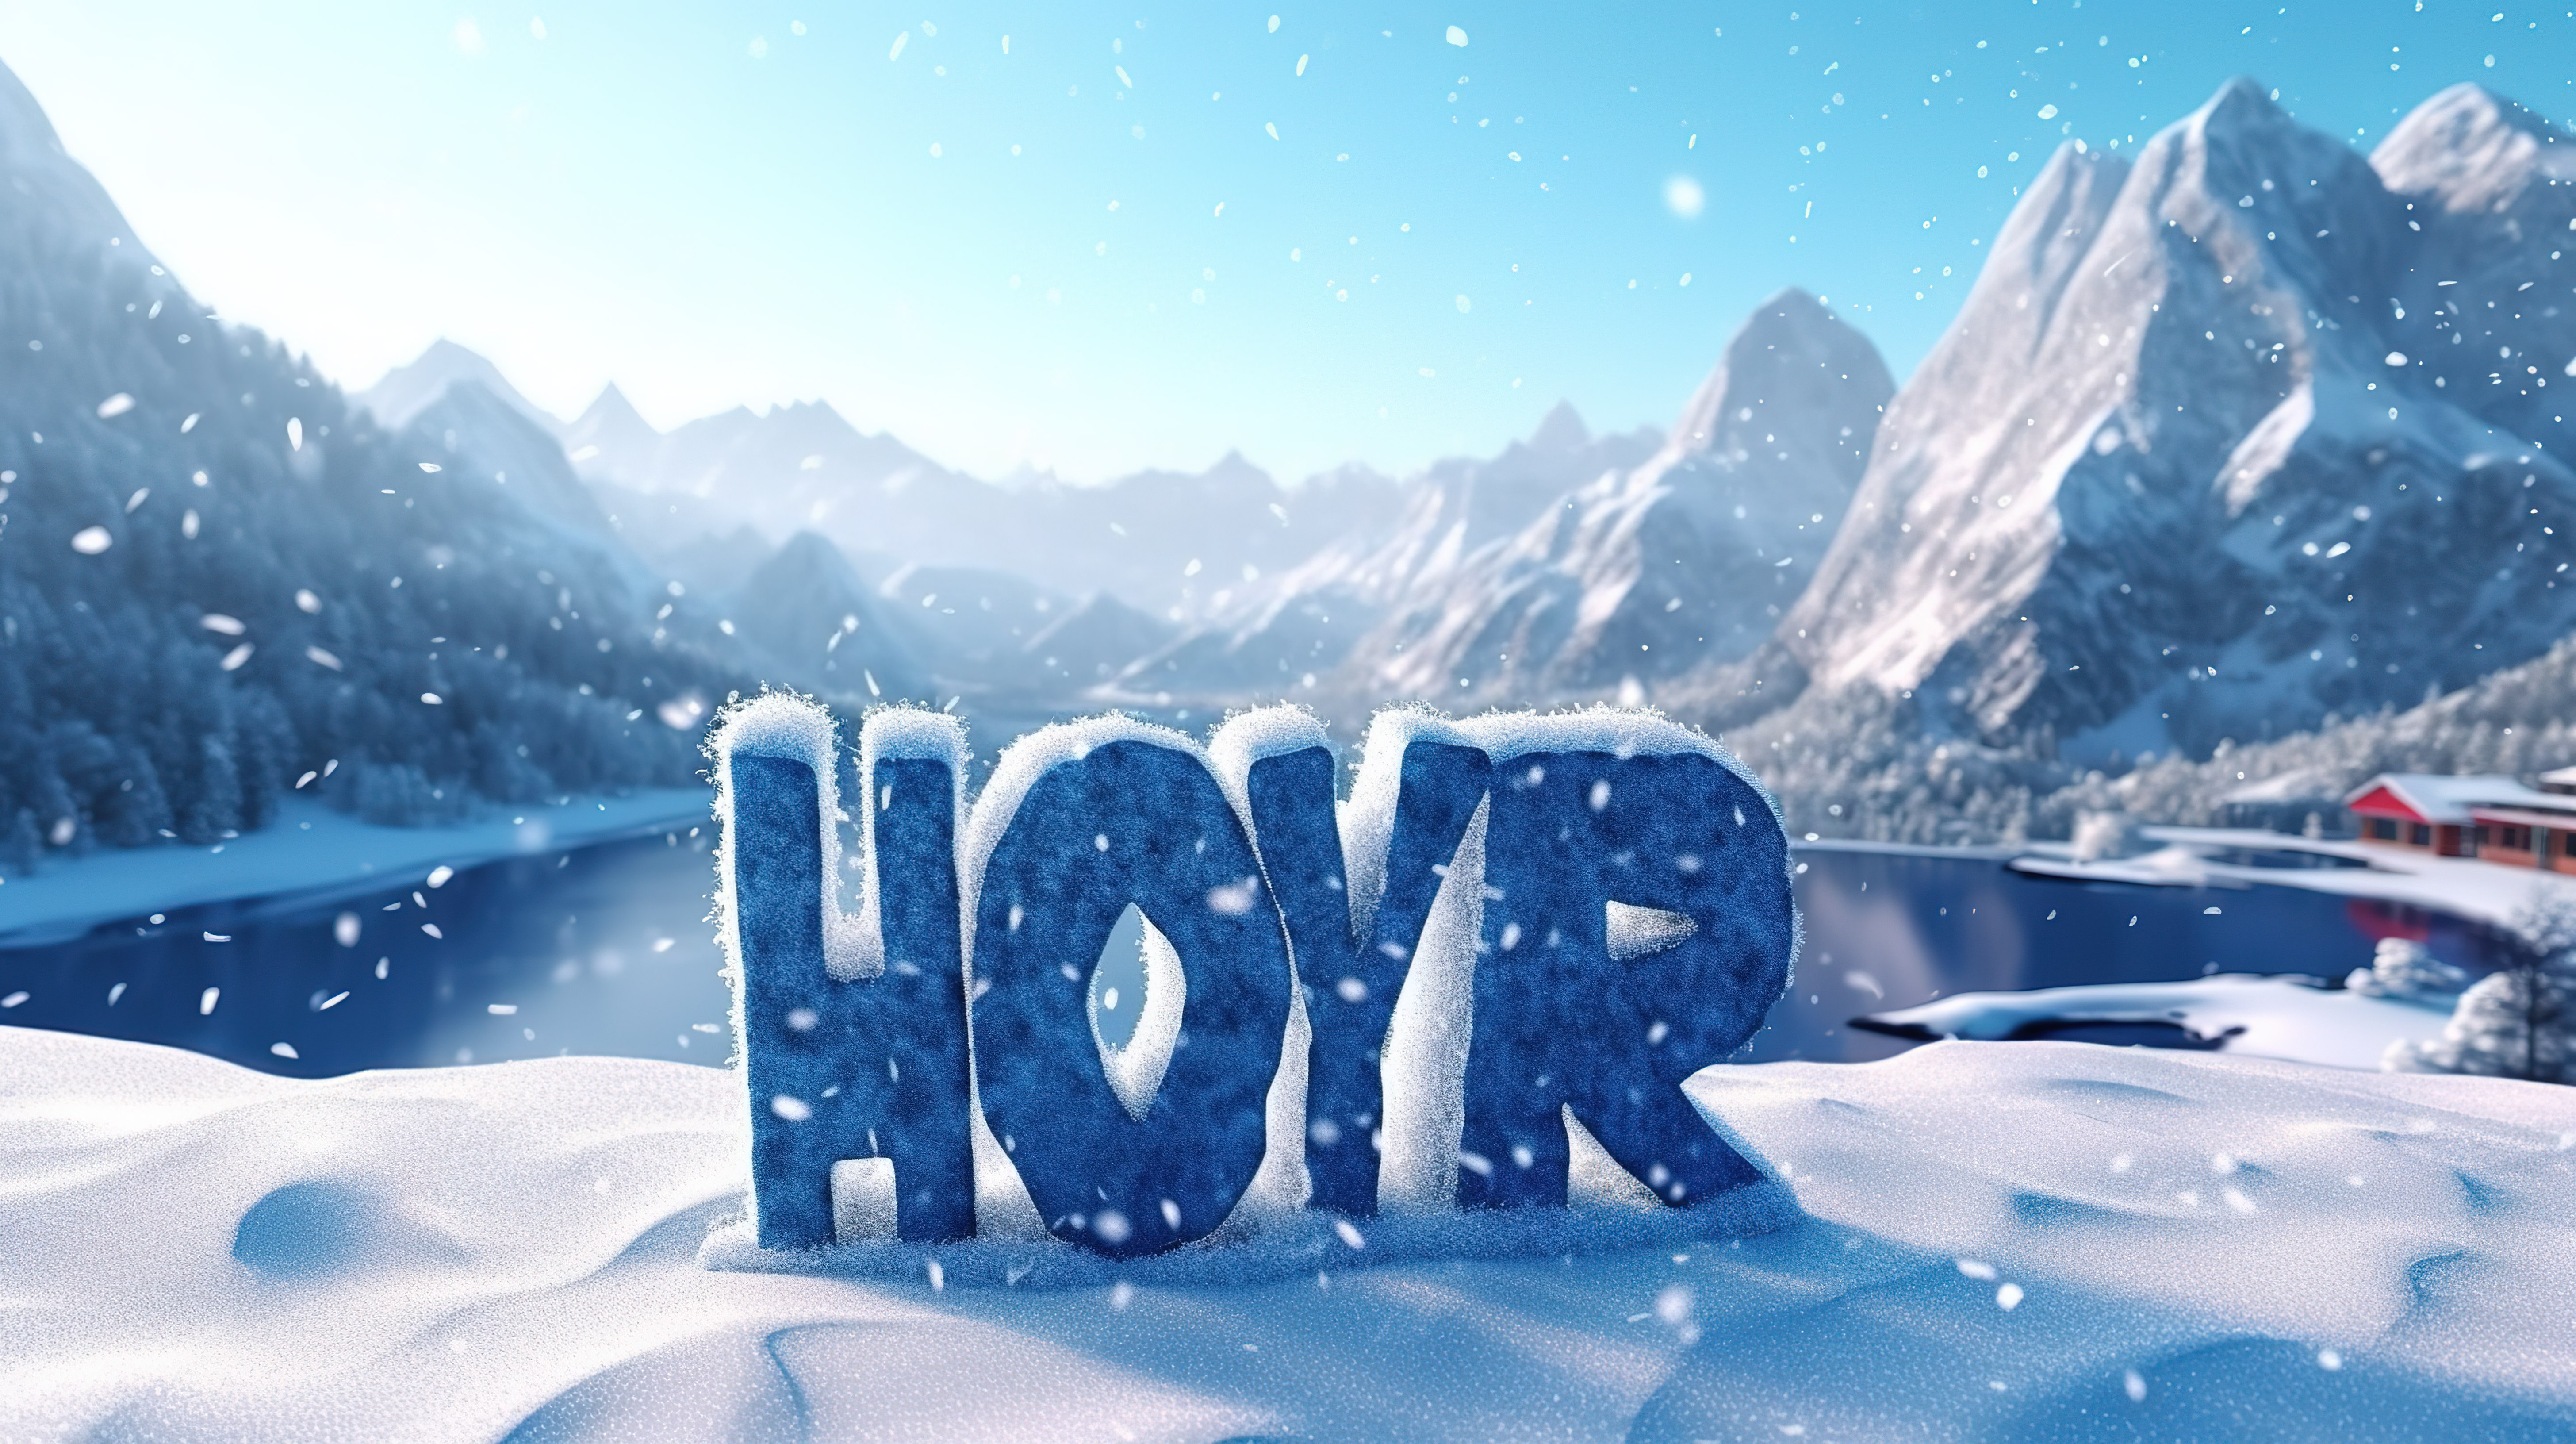 放大节日问候文本风景雪山景观高端和精致的 3D 插图与冬季假期的动态天赋图片